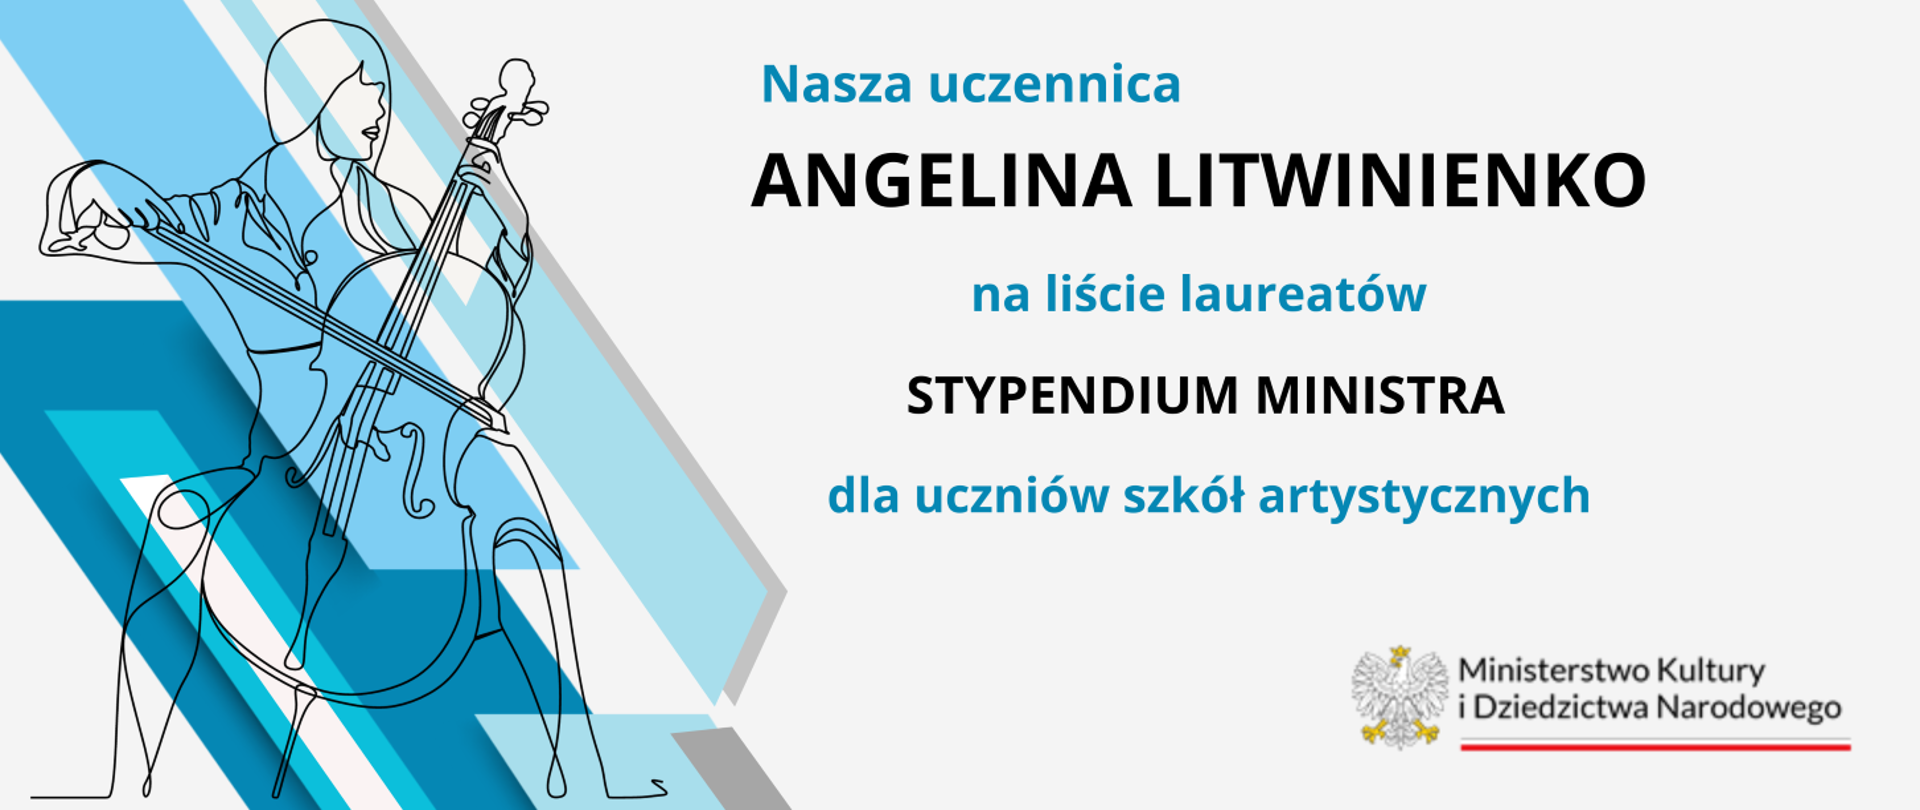 Kontur wiolonczelistki z instrumentem na niebieskim tle z boku napis Angelina Litwinienko laureatką stypendium MKiDN wraz z logo Ministerstwa.